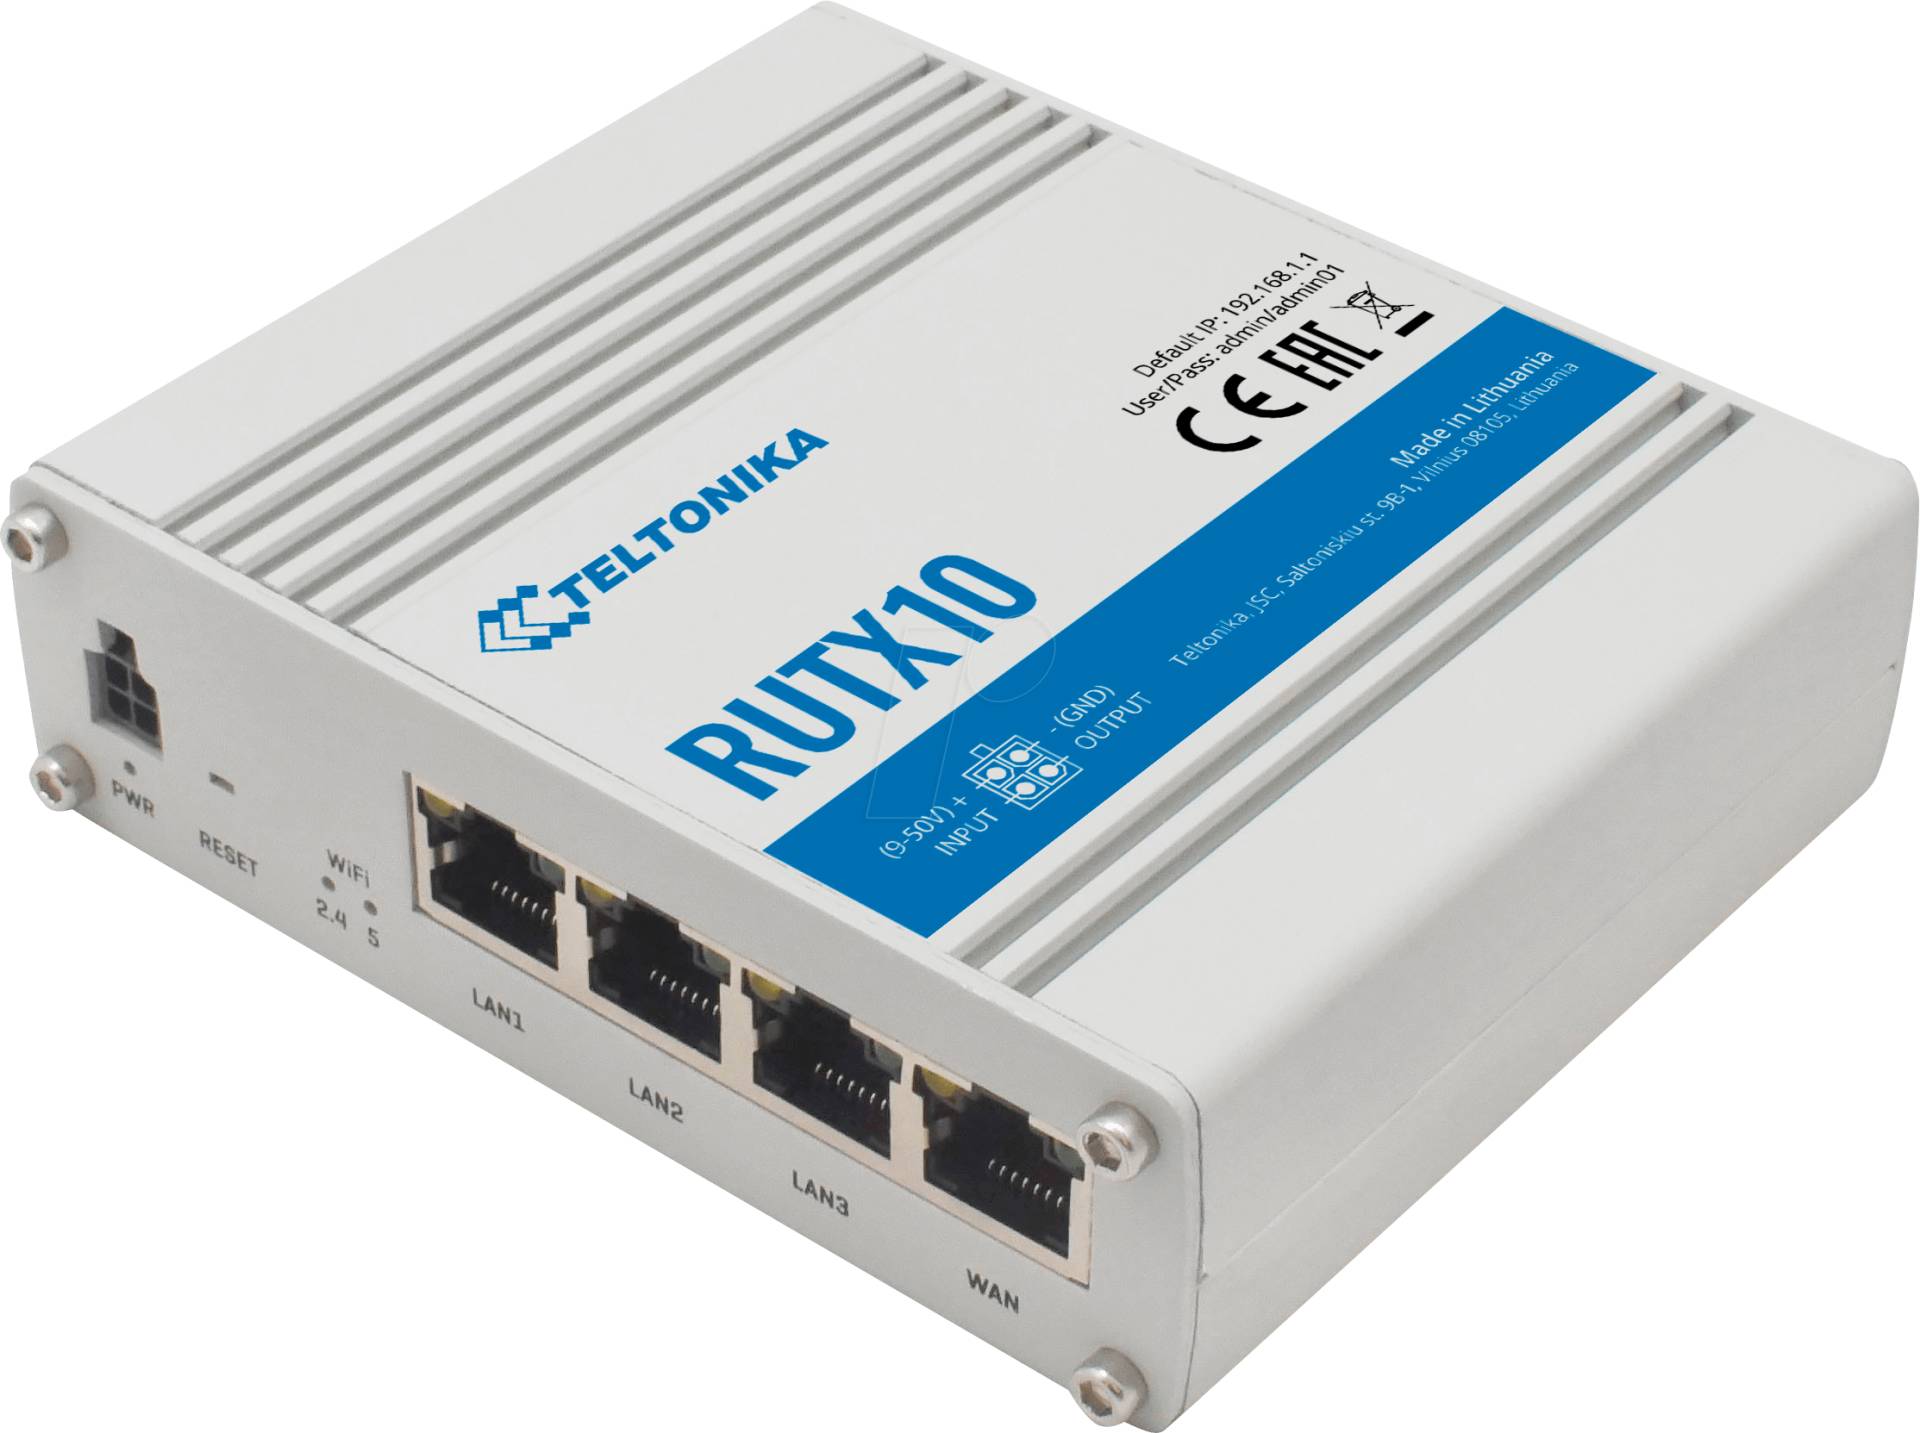 TELTONIKA RUTX10 - IoT Router, 4GE, AC WLAN, MU-MIMO, Bluetooth LE von TELTONIKA